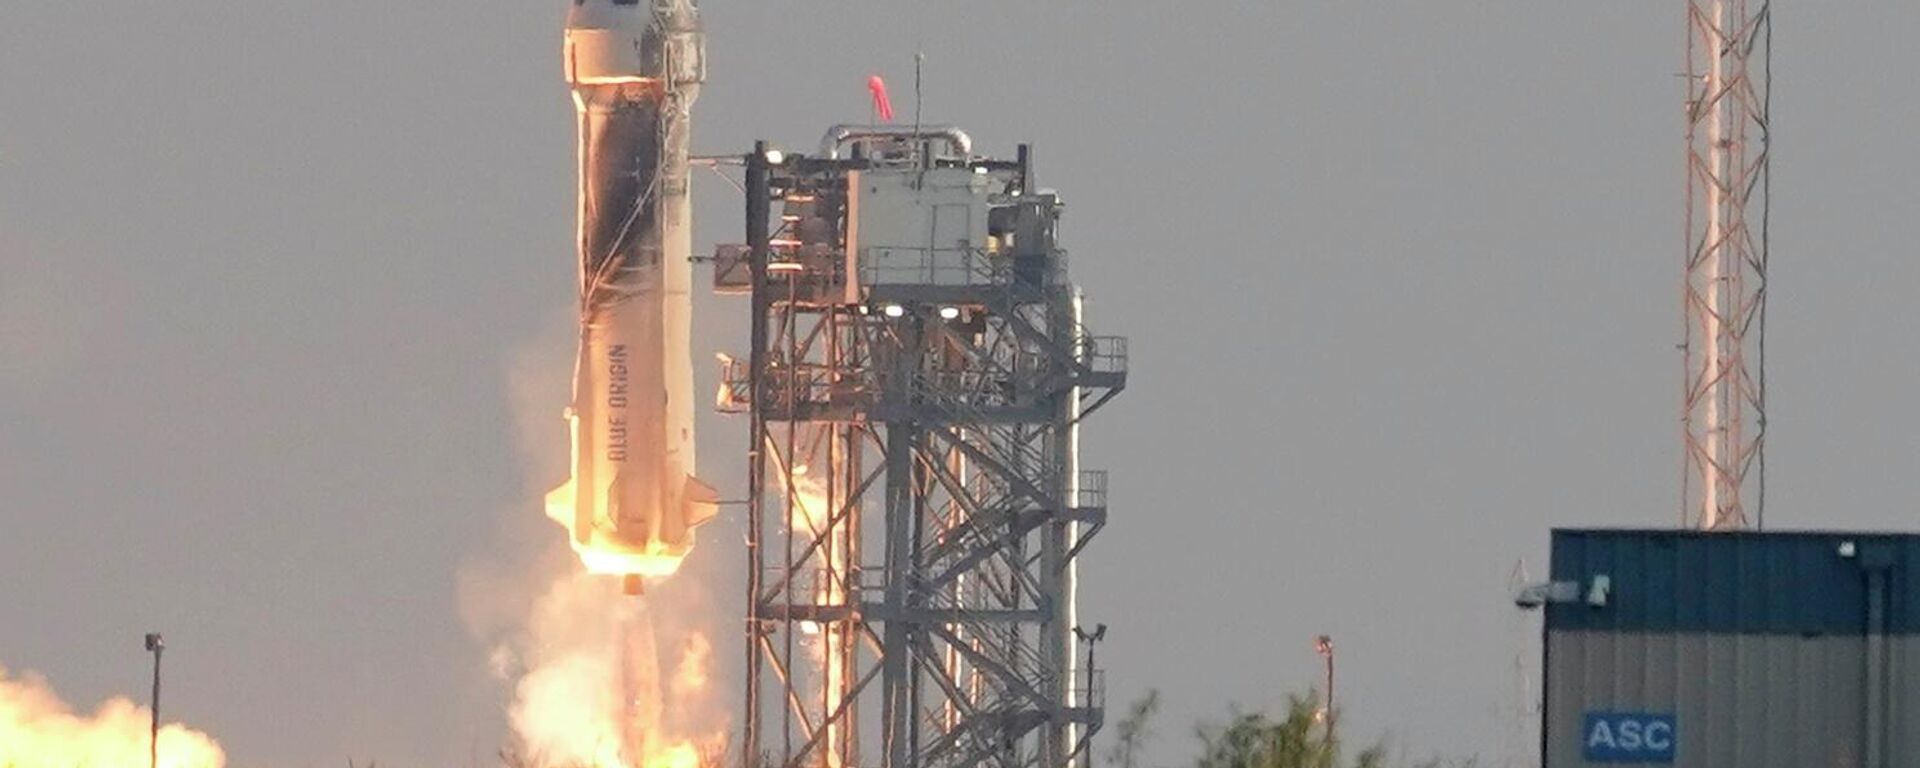 Ракета „Њу шепард“ , која је превозила Џефа Безоса и његове сапутнике са космодрома у близини Ван Хорна у Тексасу, у уторак, 20. јула 2021. - Sputnik Србија, 1920, 20.07.2021